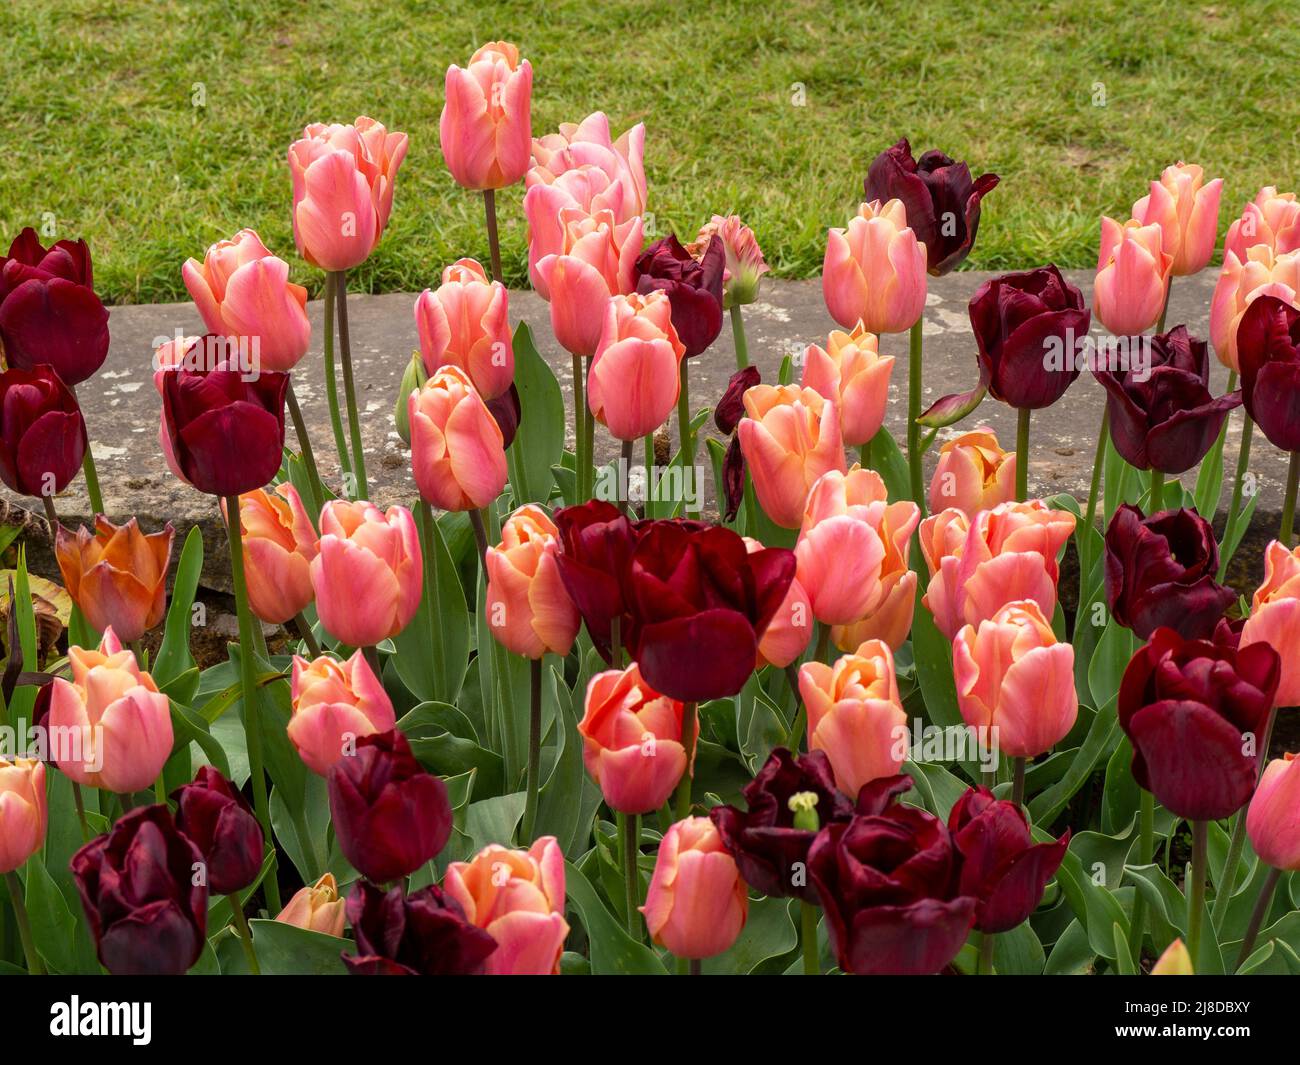 Chenies Manor Garden.Masse pflanzte Tulpen im versunkenen Garten. Tulipa 'Ronaldo' und Tulipa 'Request' eine Mischung aus Burgund und Pastellorange. Stockfoto